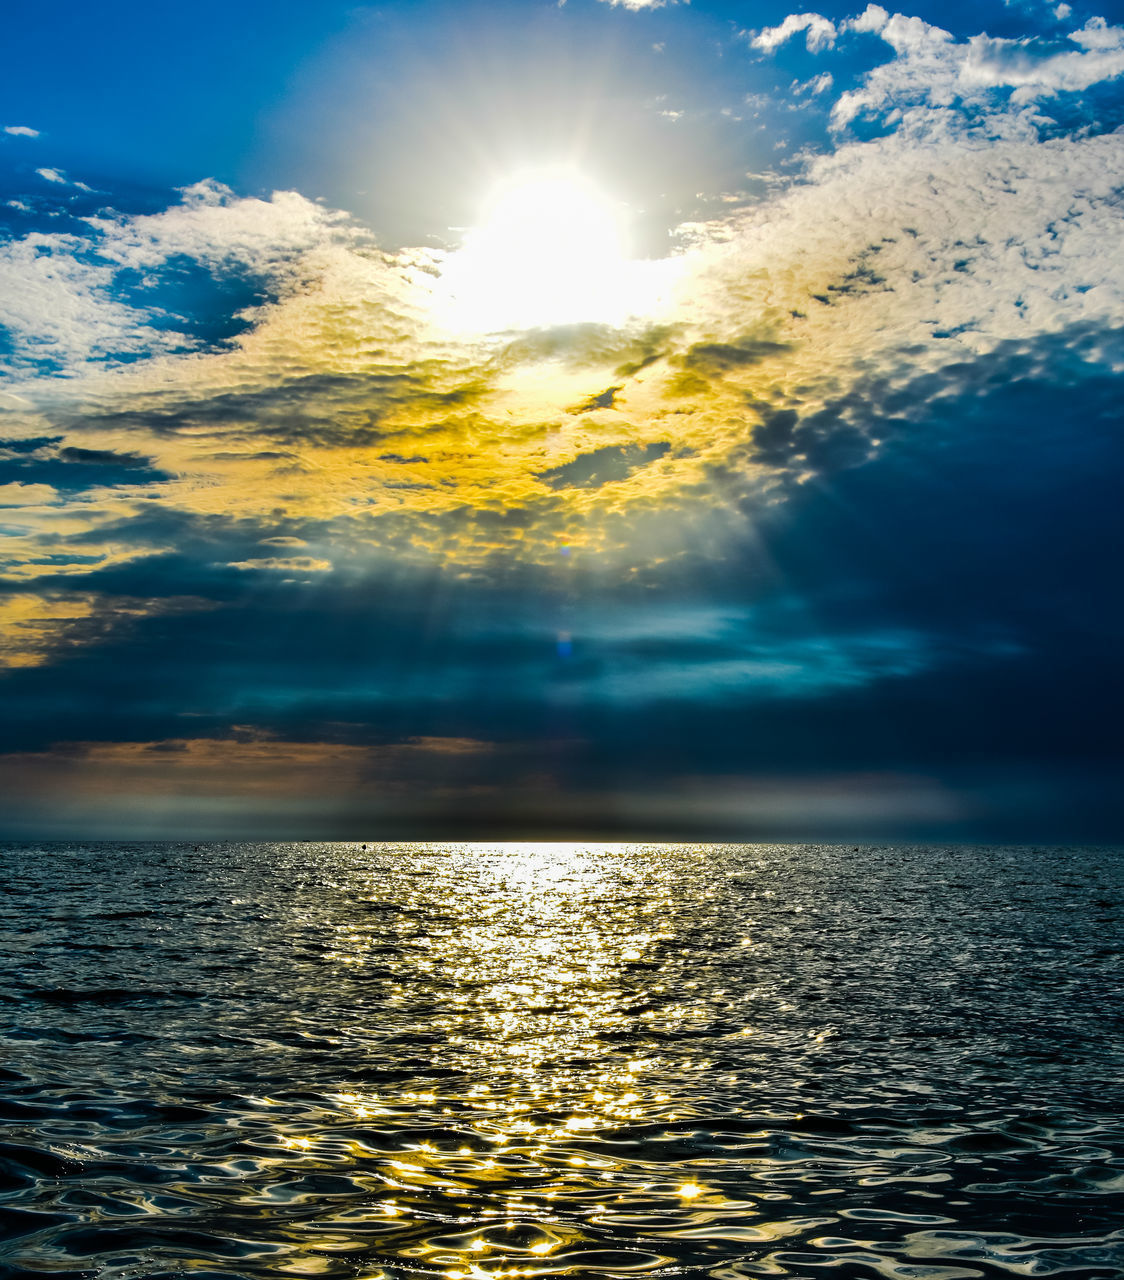 SCENIC VIEW OF SEA AGAINST BRIGHT SUN